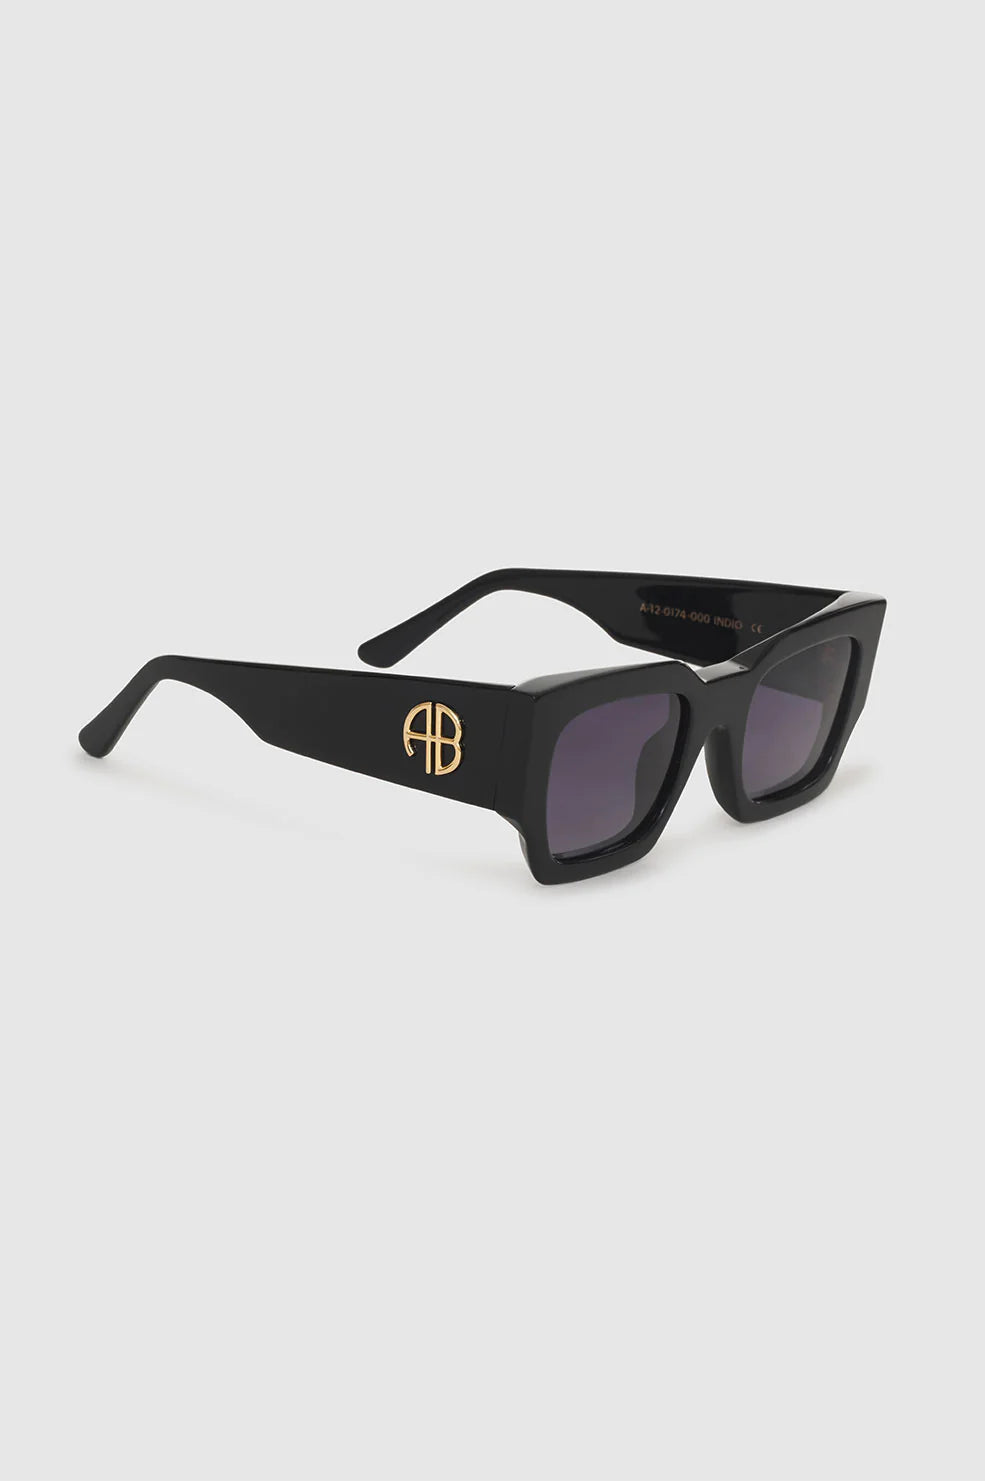 Indio Sunglasses Monogram in Black